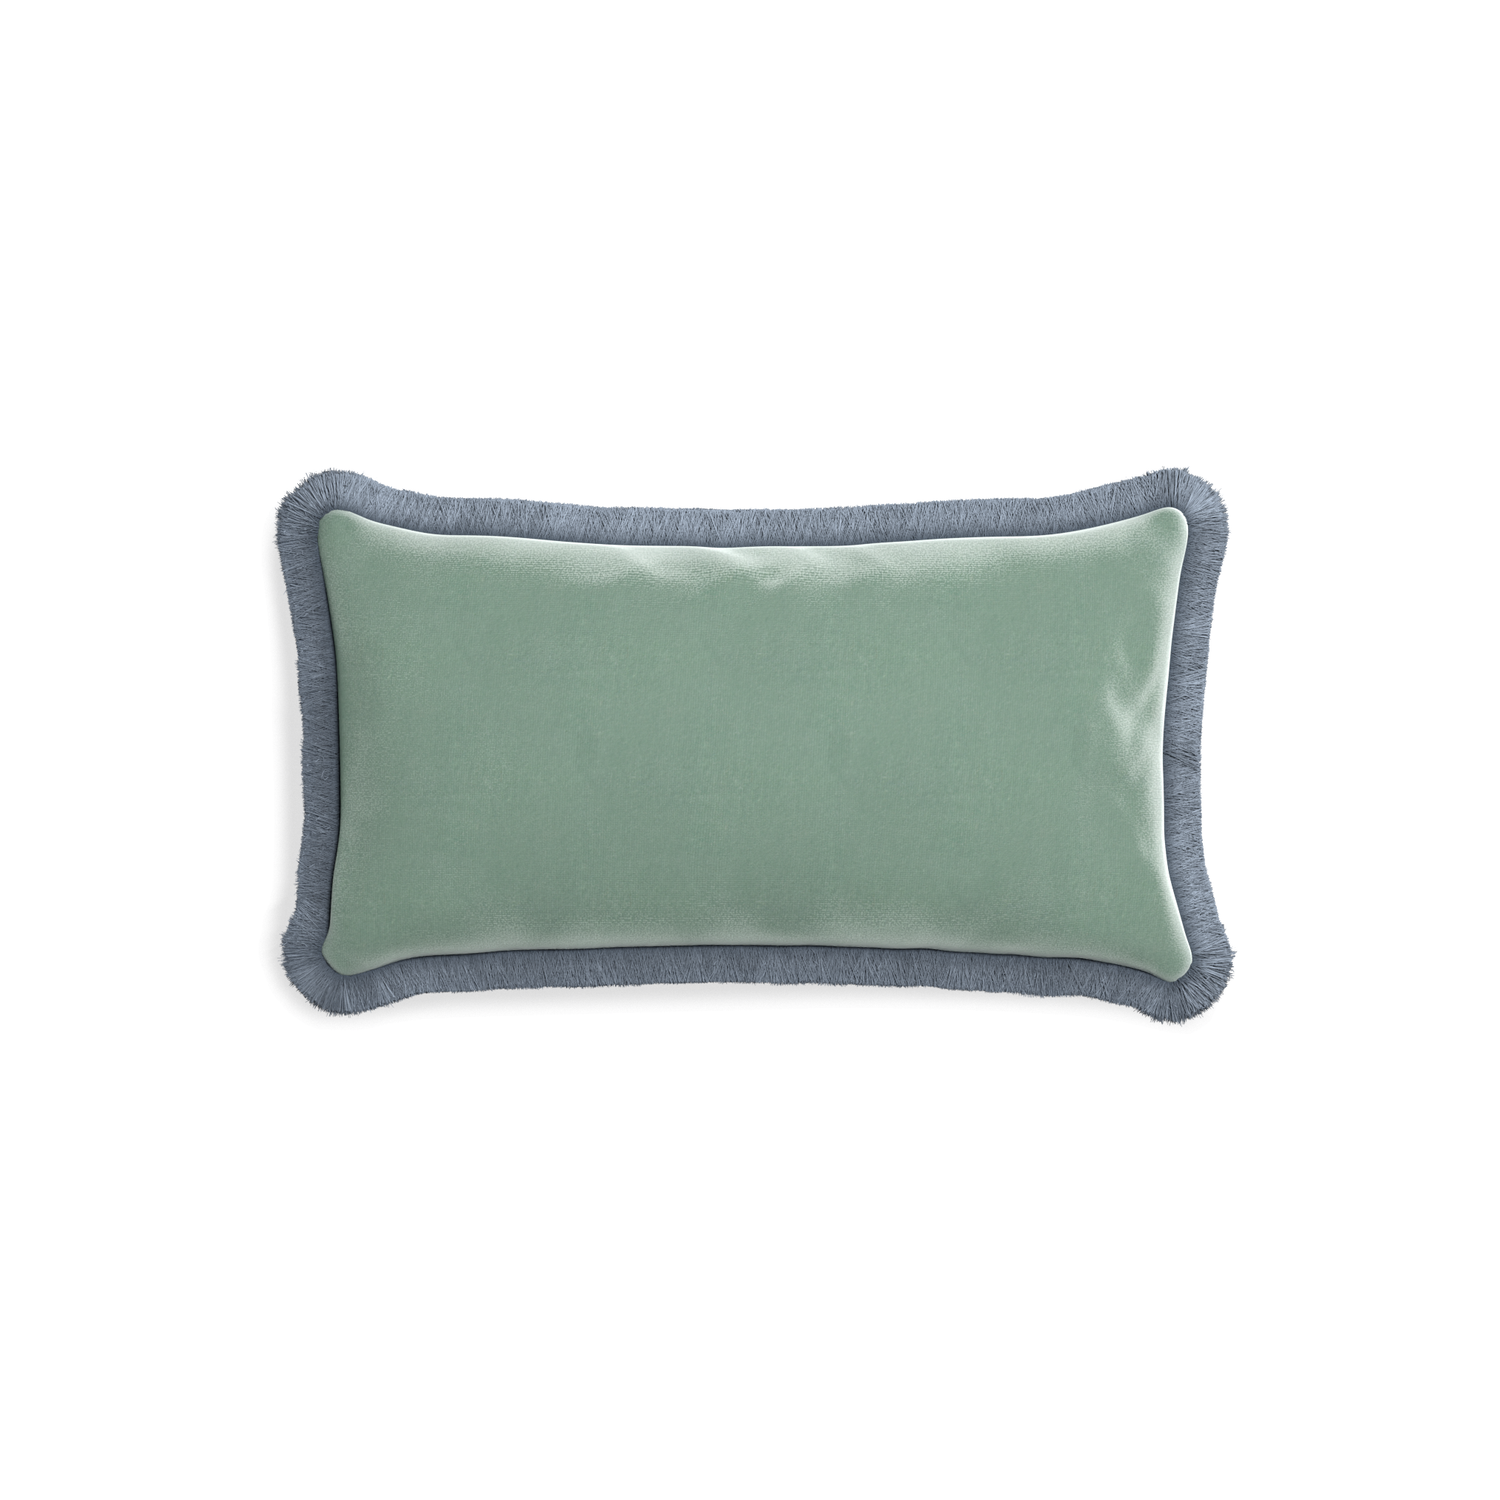 rectangle blue green velvet pillow with sky blue fringe